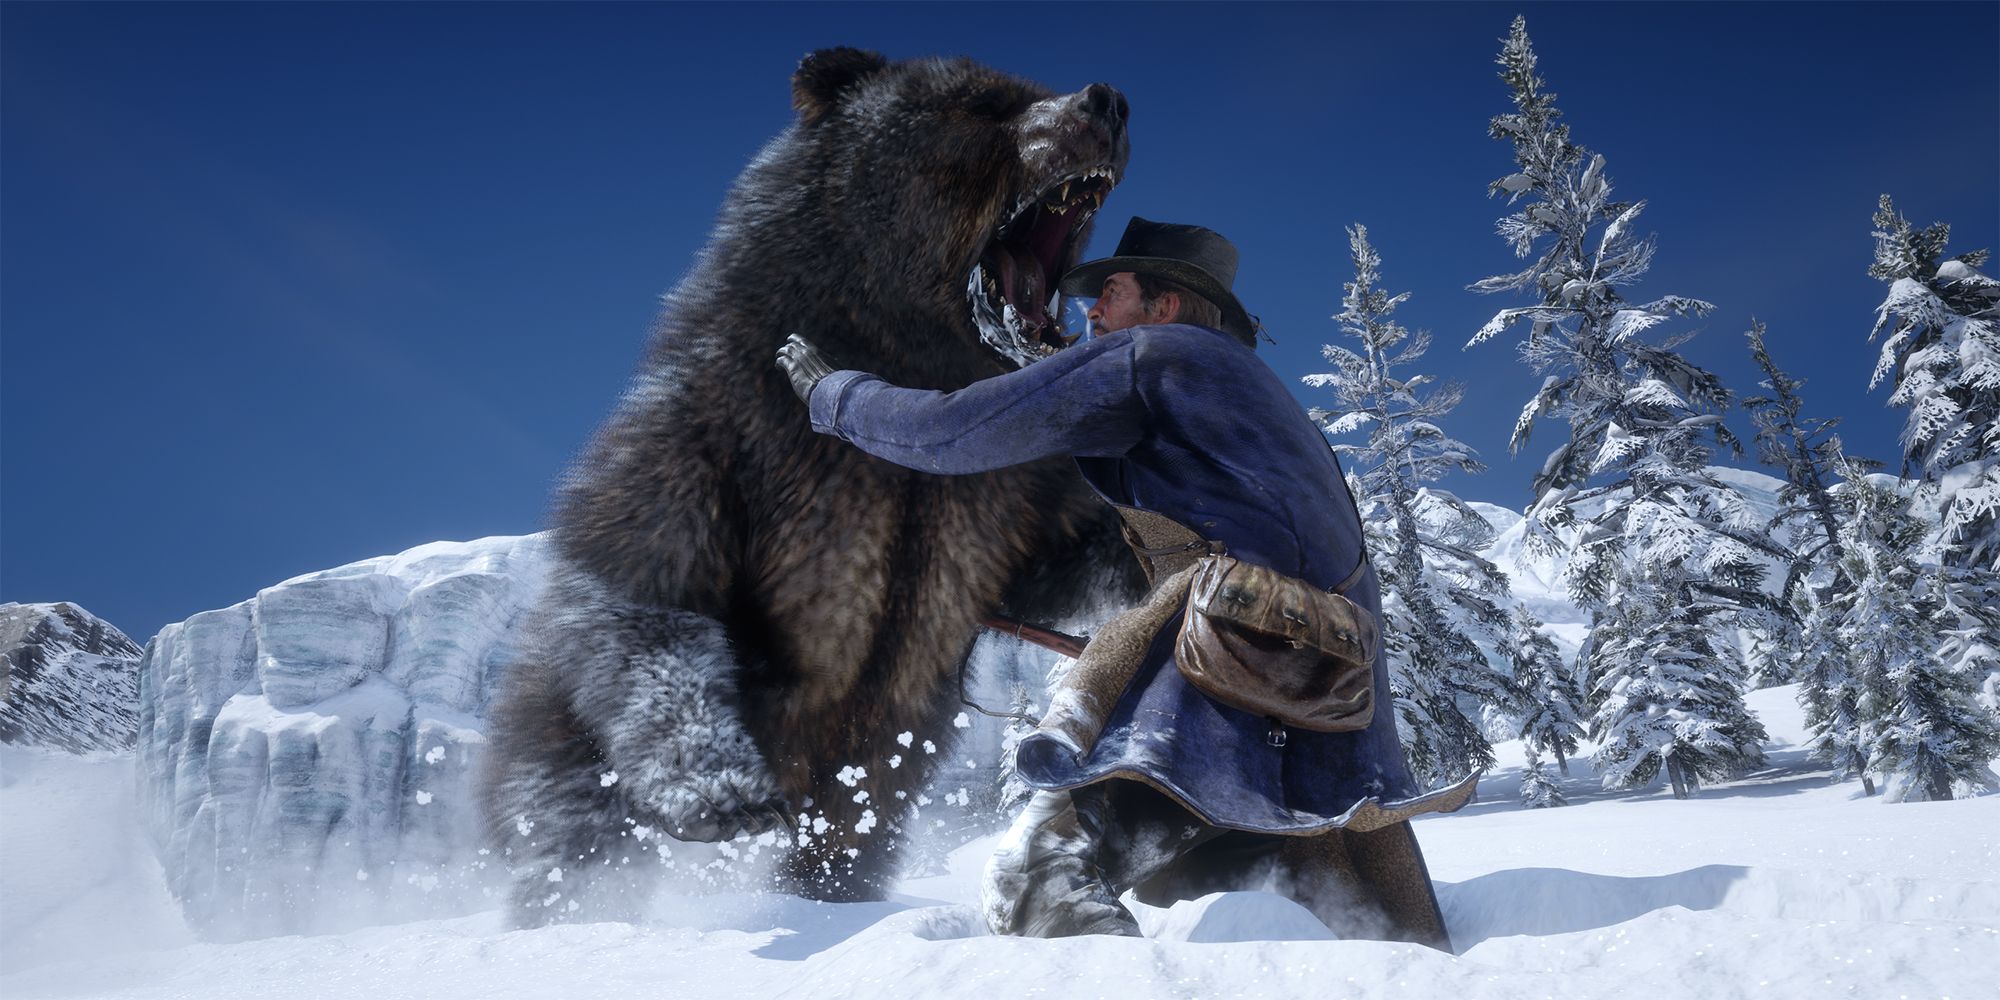 Red Dead Redemption 2 კლიპი არის შეხსენება, თუ რატომ არ უნდა შეაფასონ მოთამაშეები დათვს